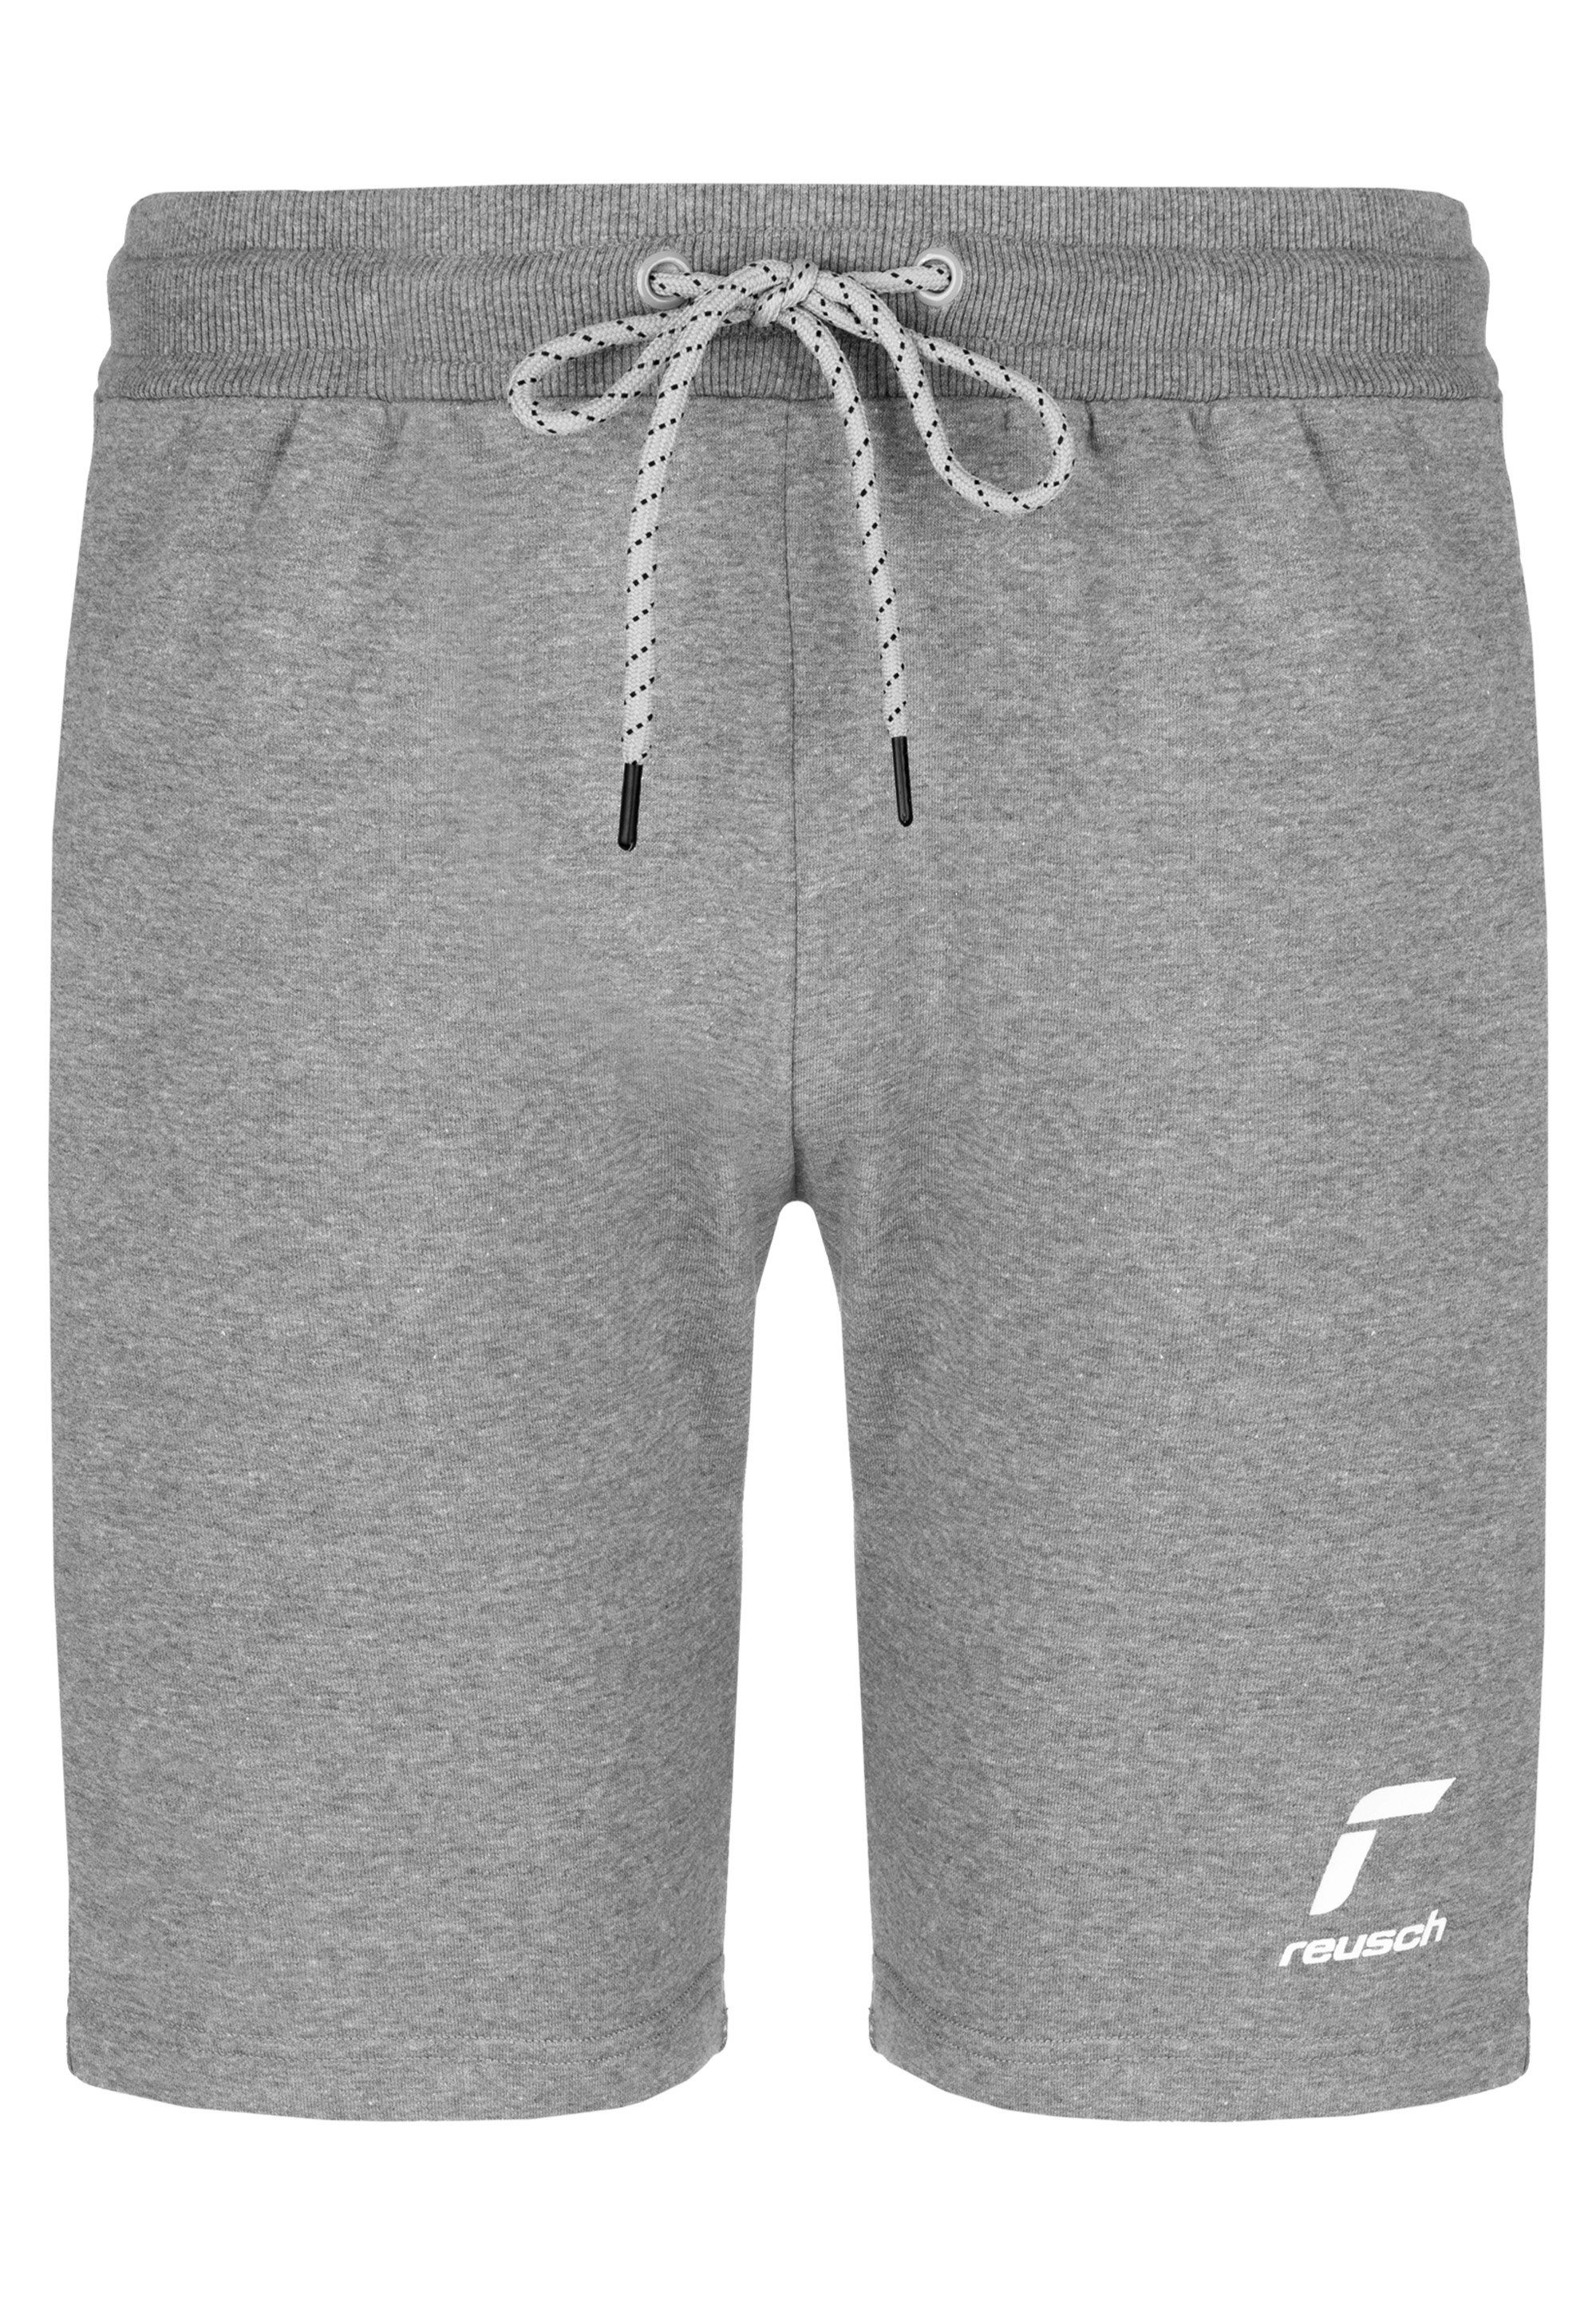 Reusch Torwarthose Bund Shorts mit elastischem